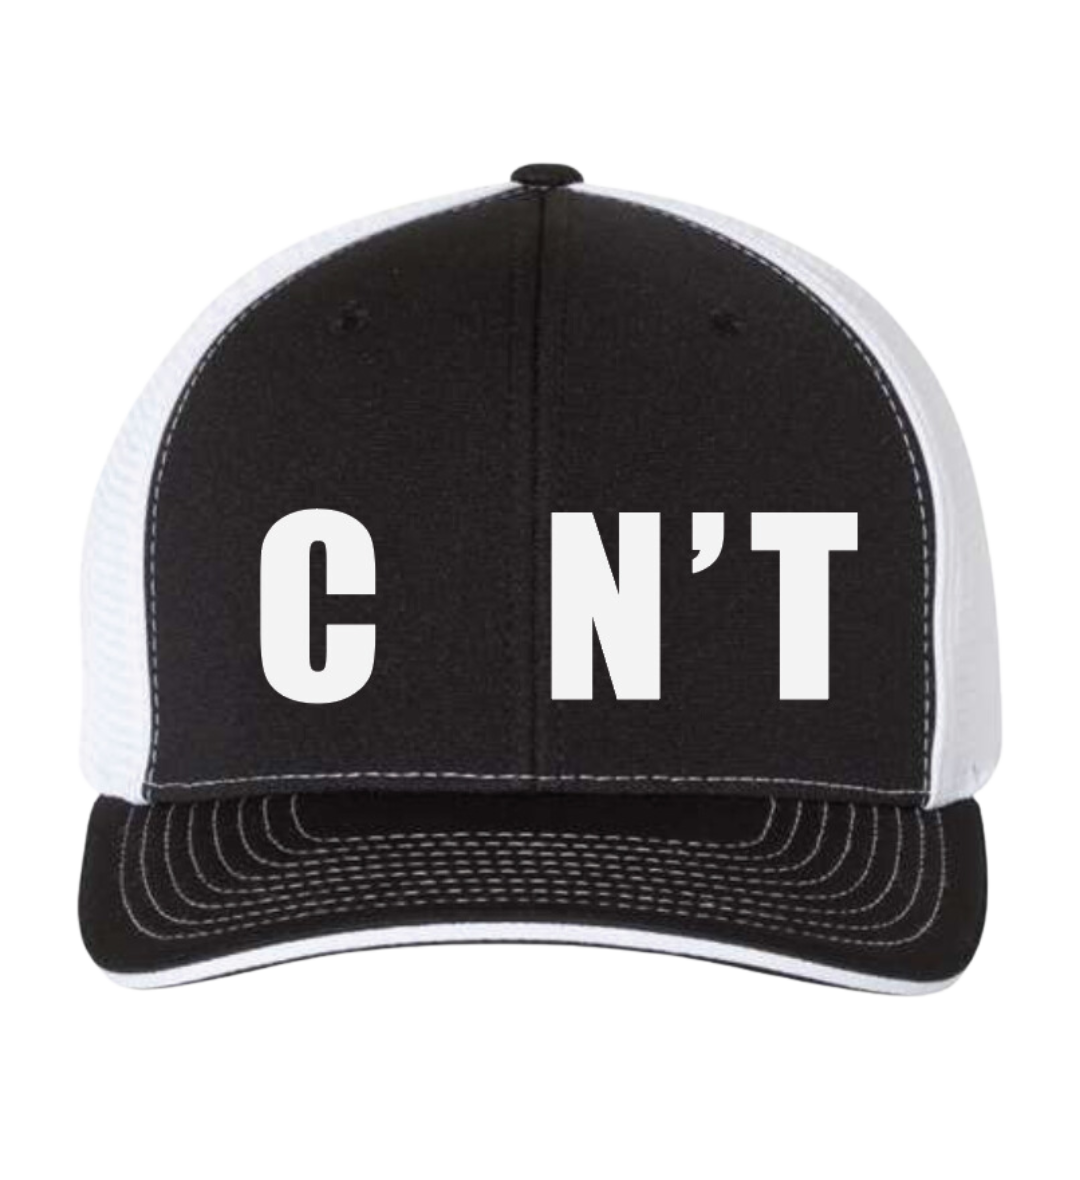 C NT Trucker Hat